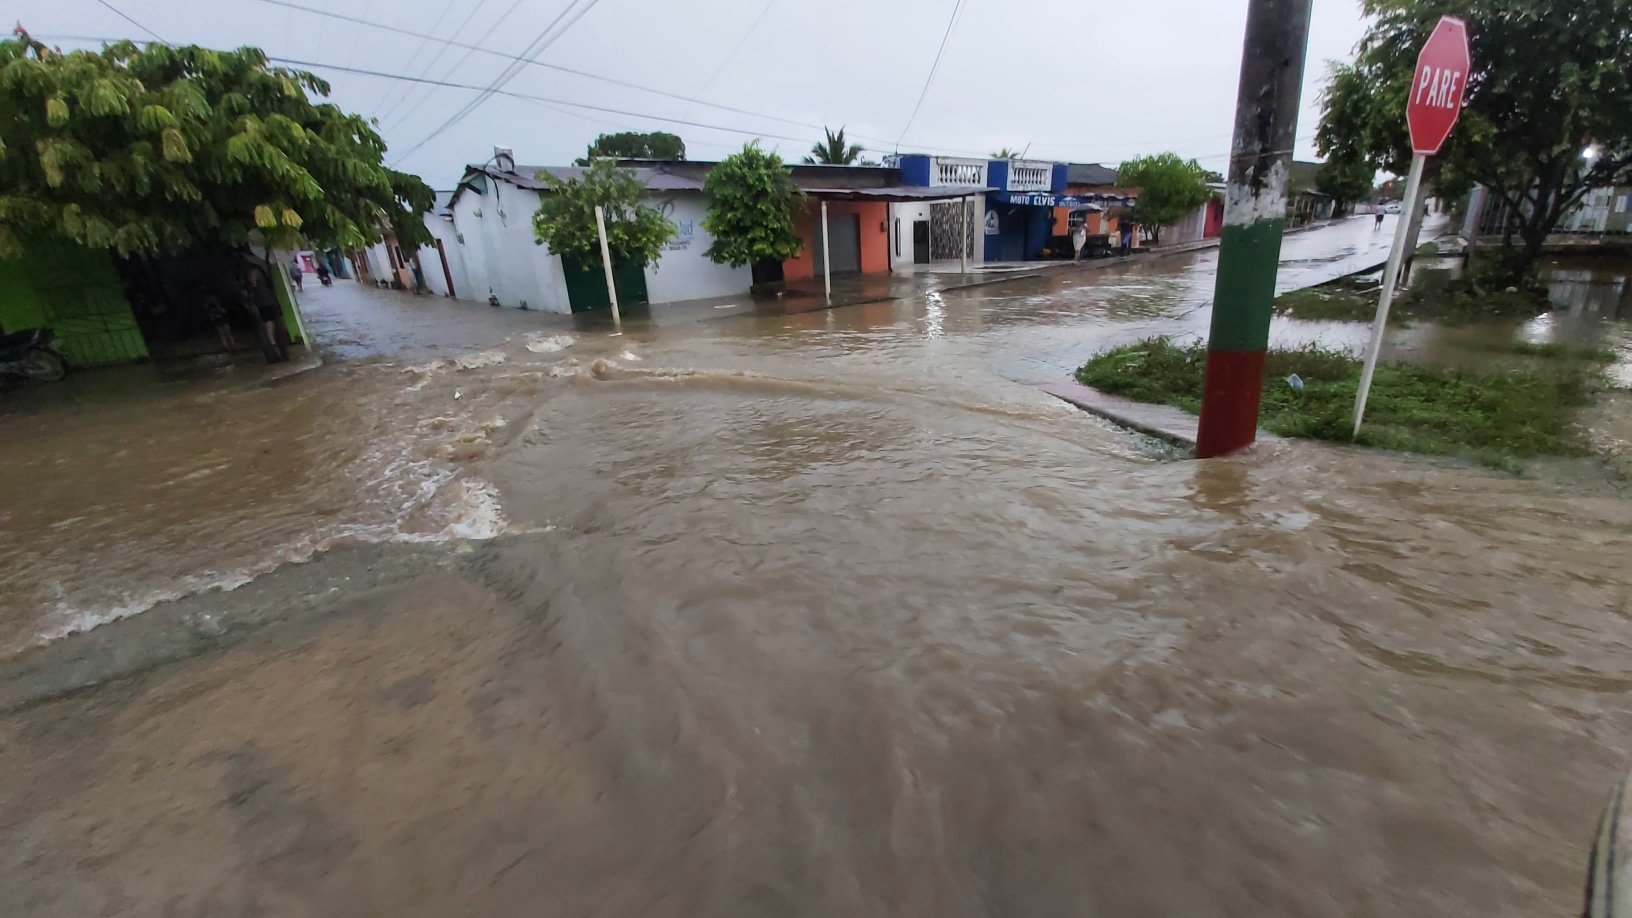 Las aguas del río Cauca siguen inundando la zona y se registran emergencias y graves daños en viviendas. Foto: cortesía